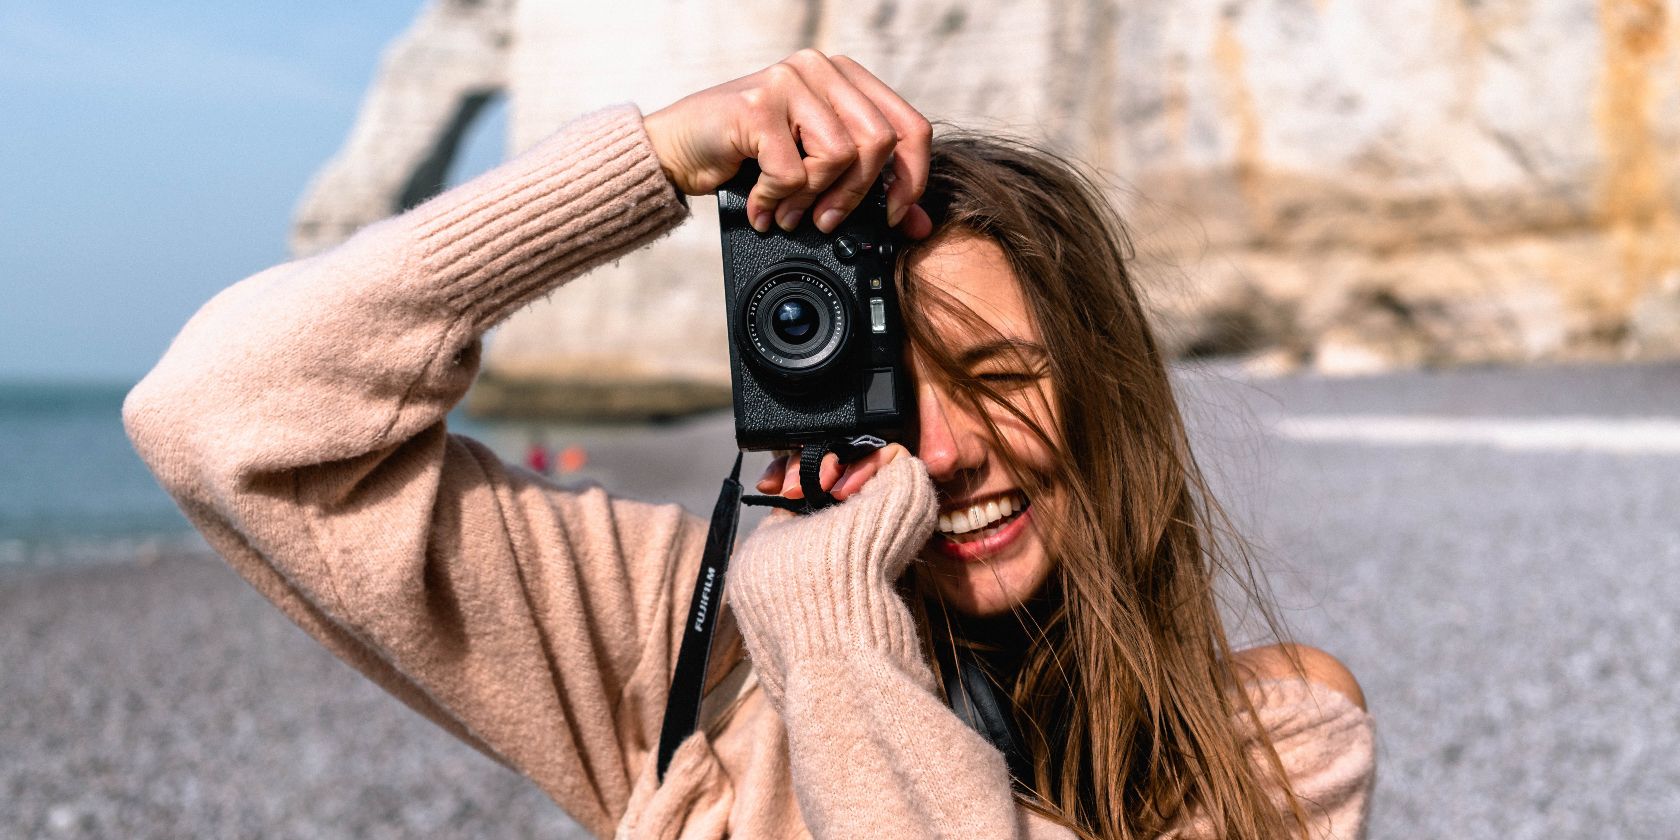 một người phụ nữ cầm máy ảnh và chụp ảnh người khác với một vách đá ở hậu cảnh